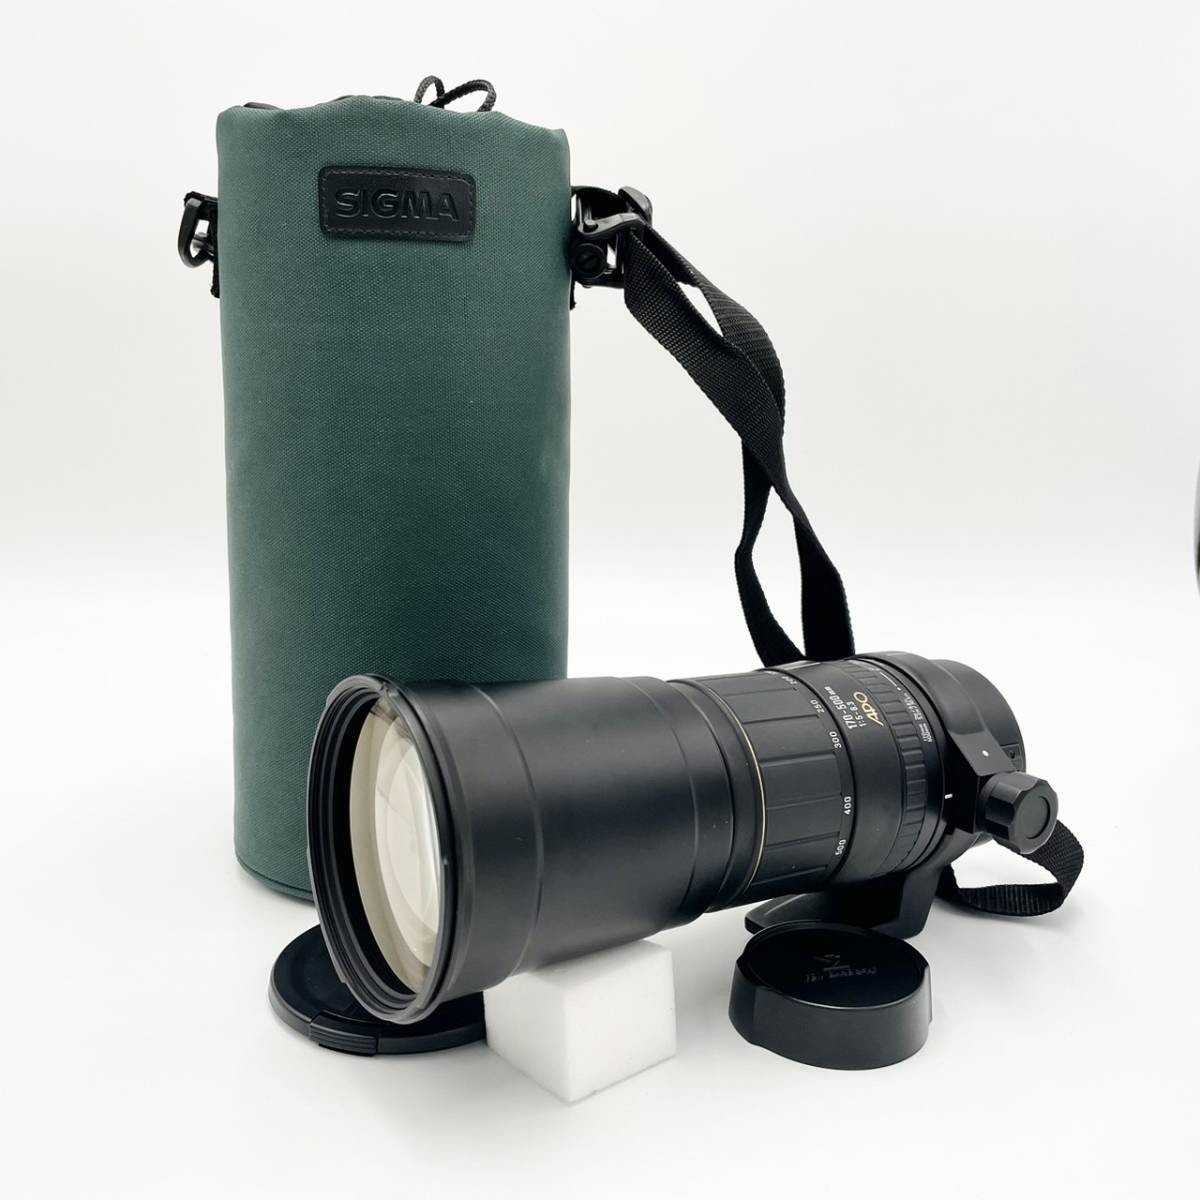 SIGMA 170-500mm ズー厶レンズ キャノンEF用-